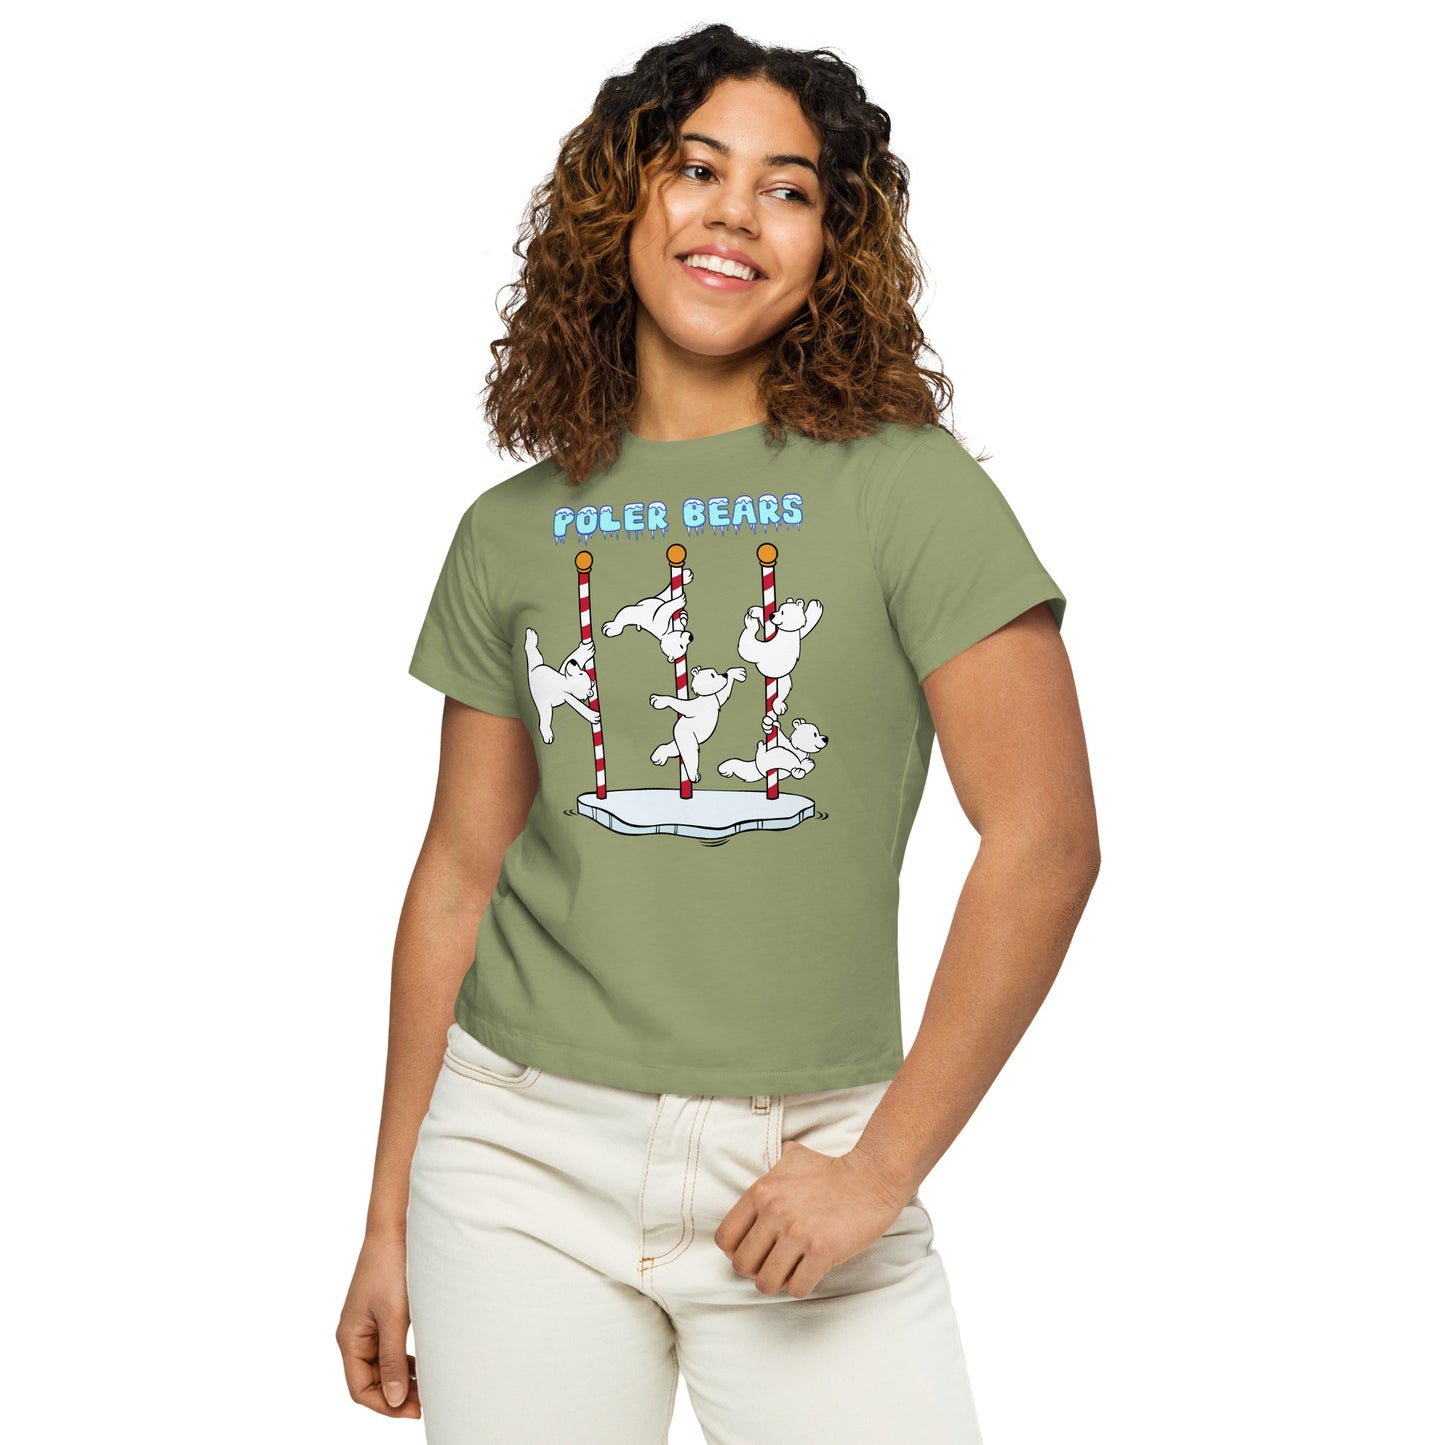 Poler Bears - Women’s high-waisted t-shirt